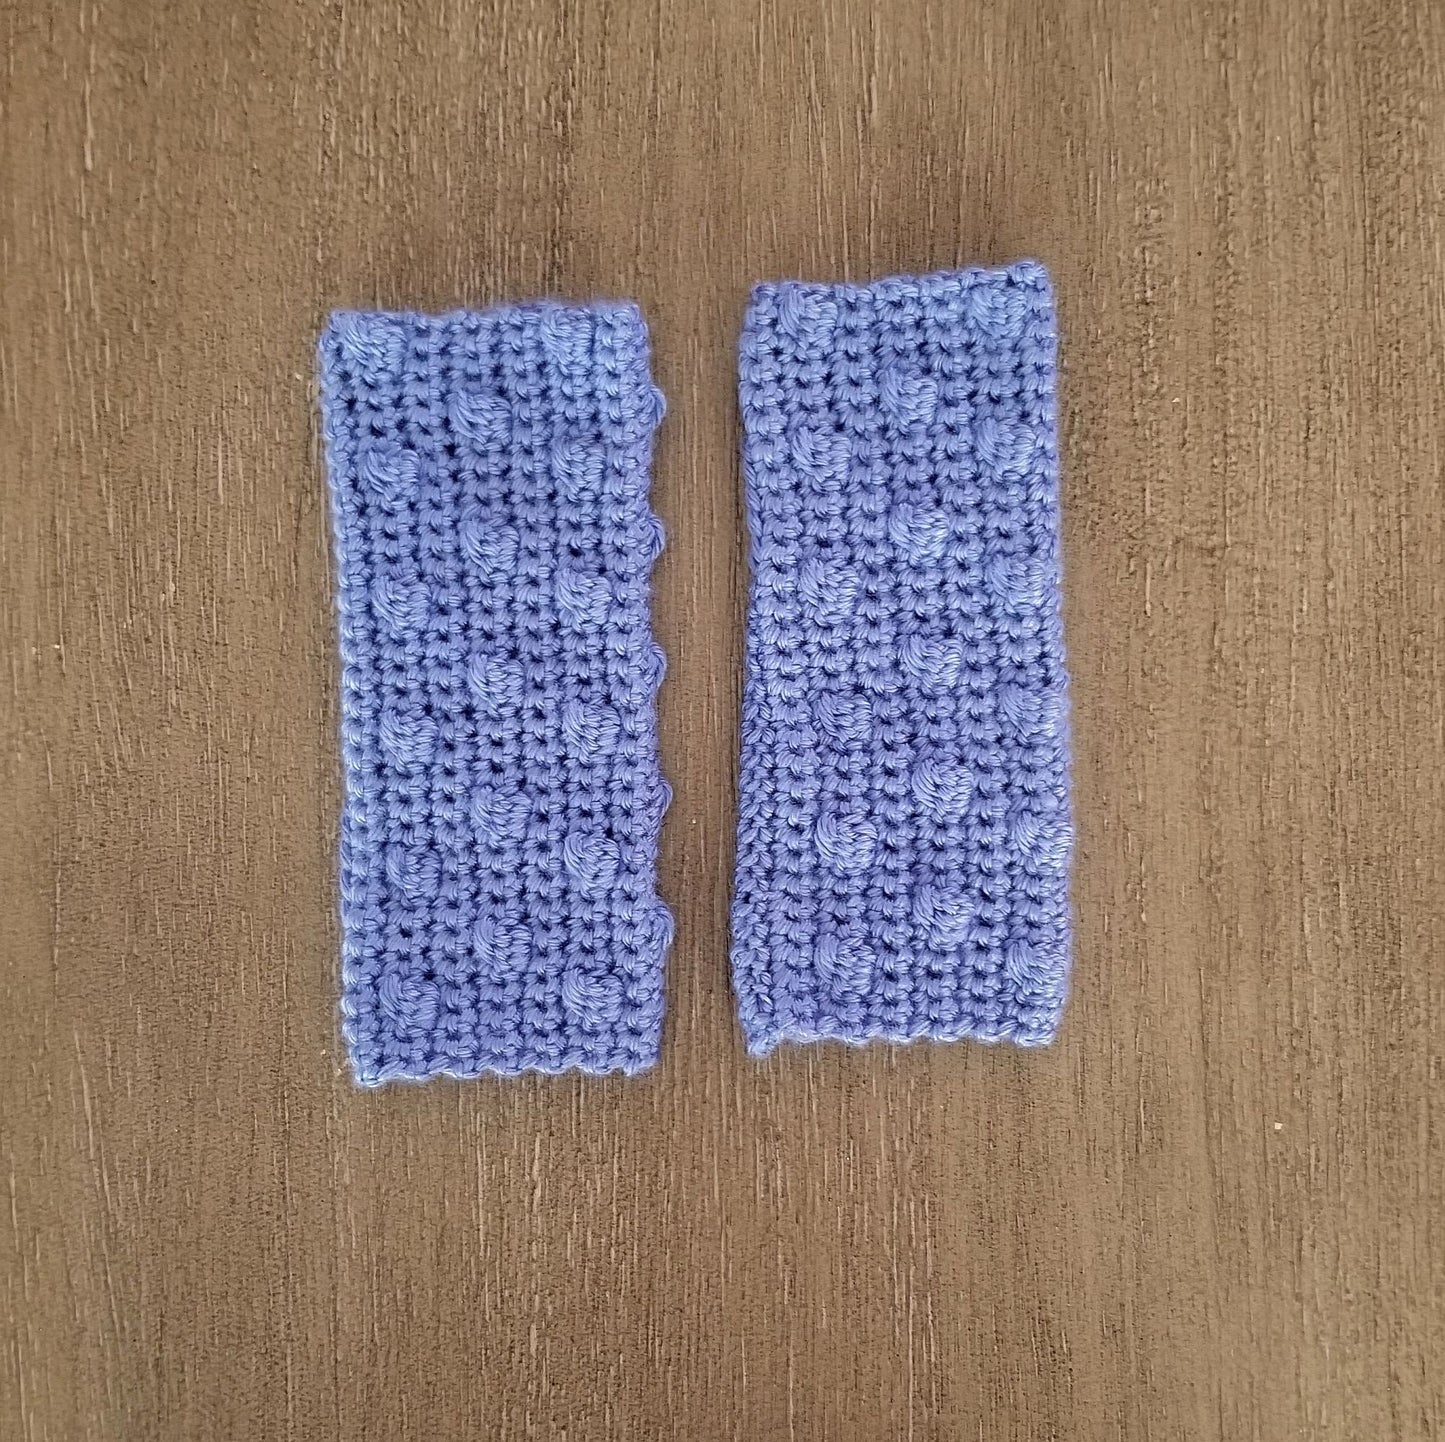 Bobble Fingerless Gloves Crochet Pattern, PDF Digital Download